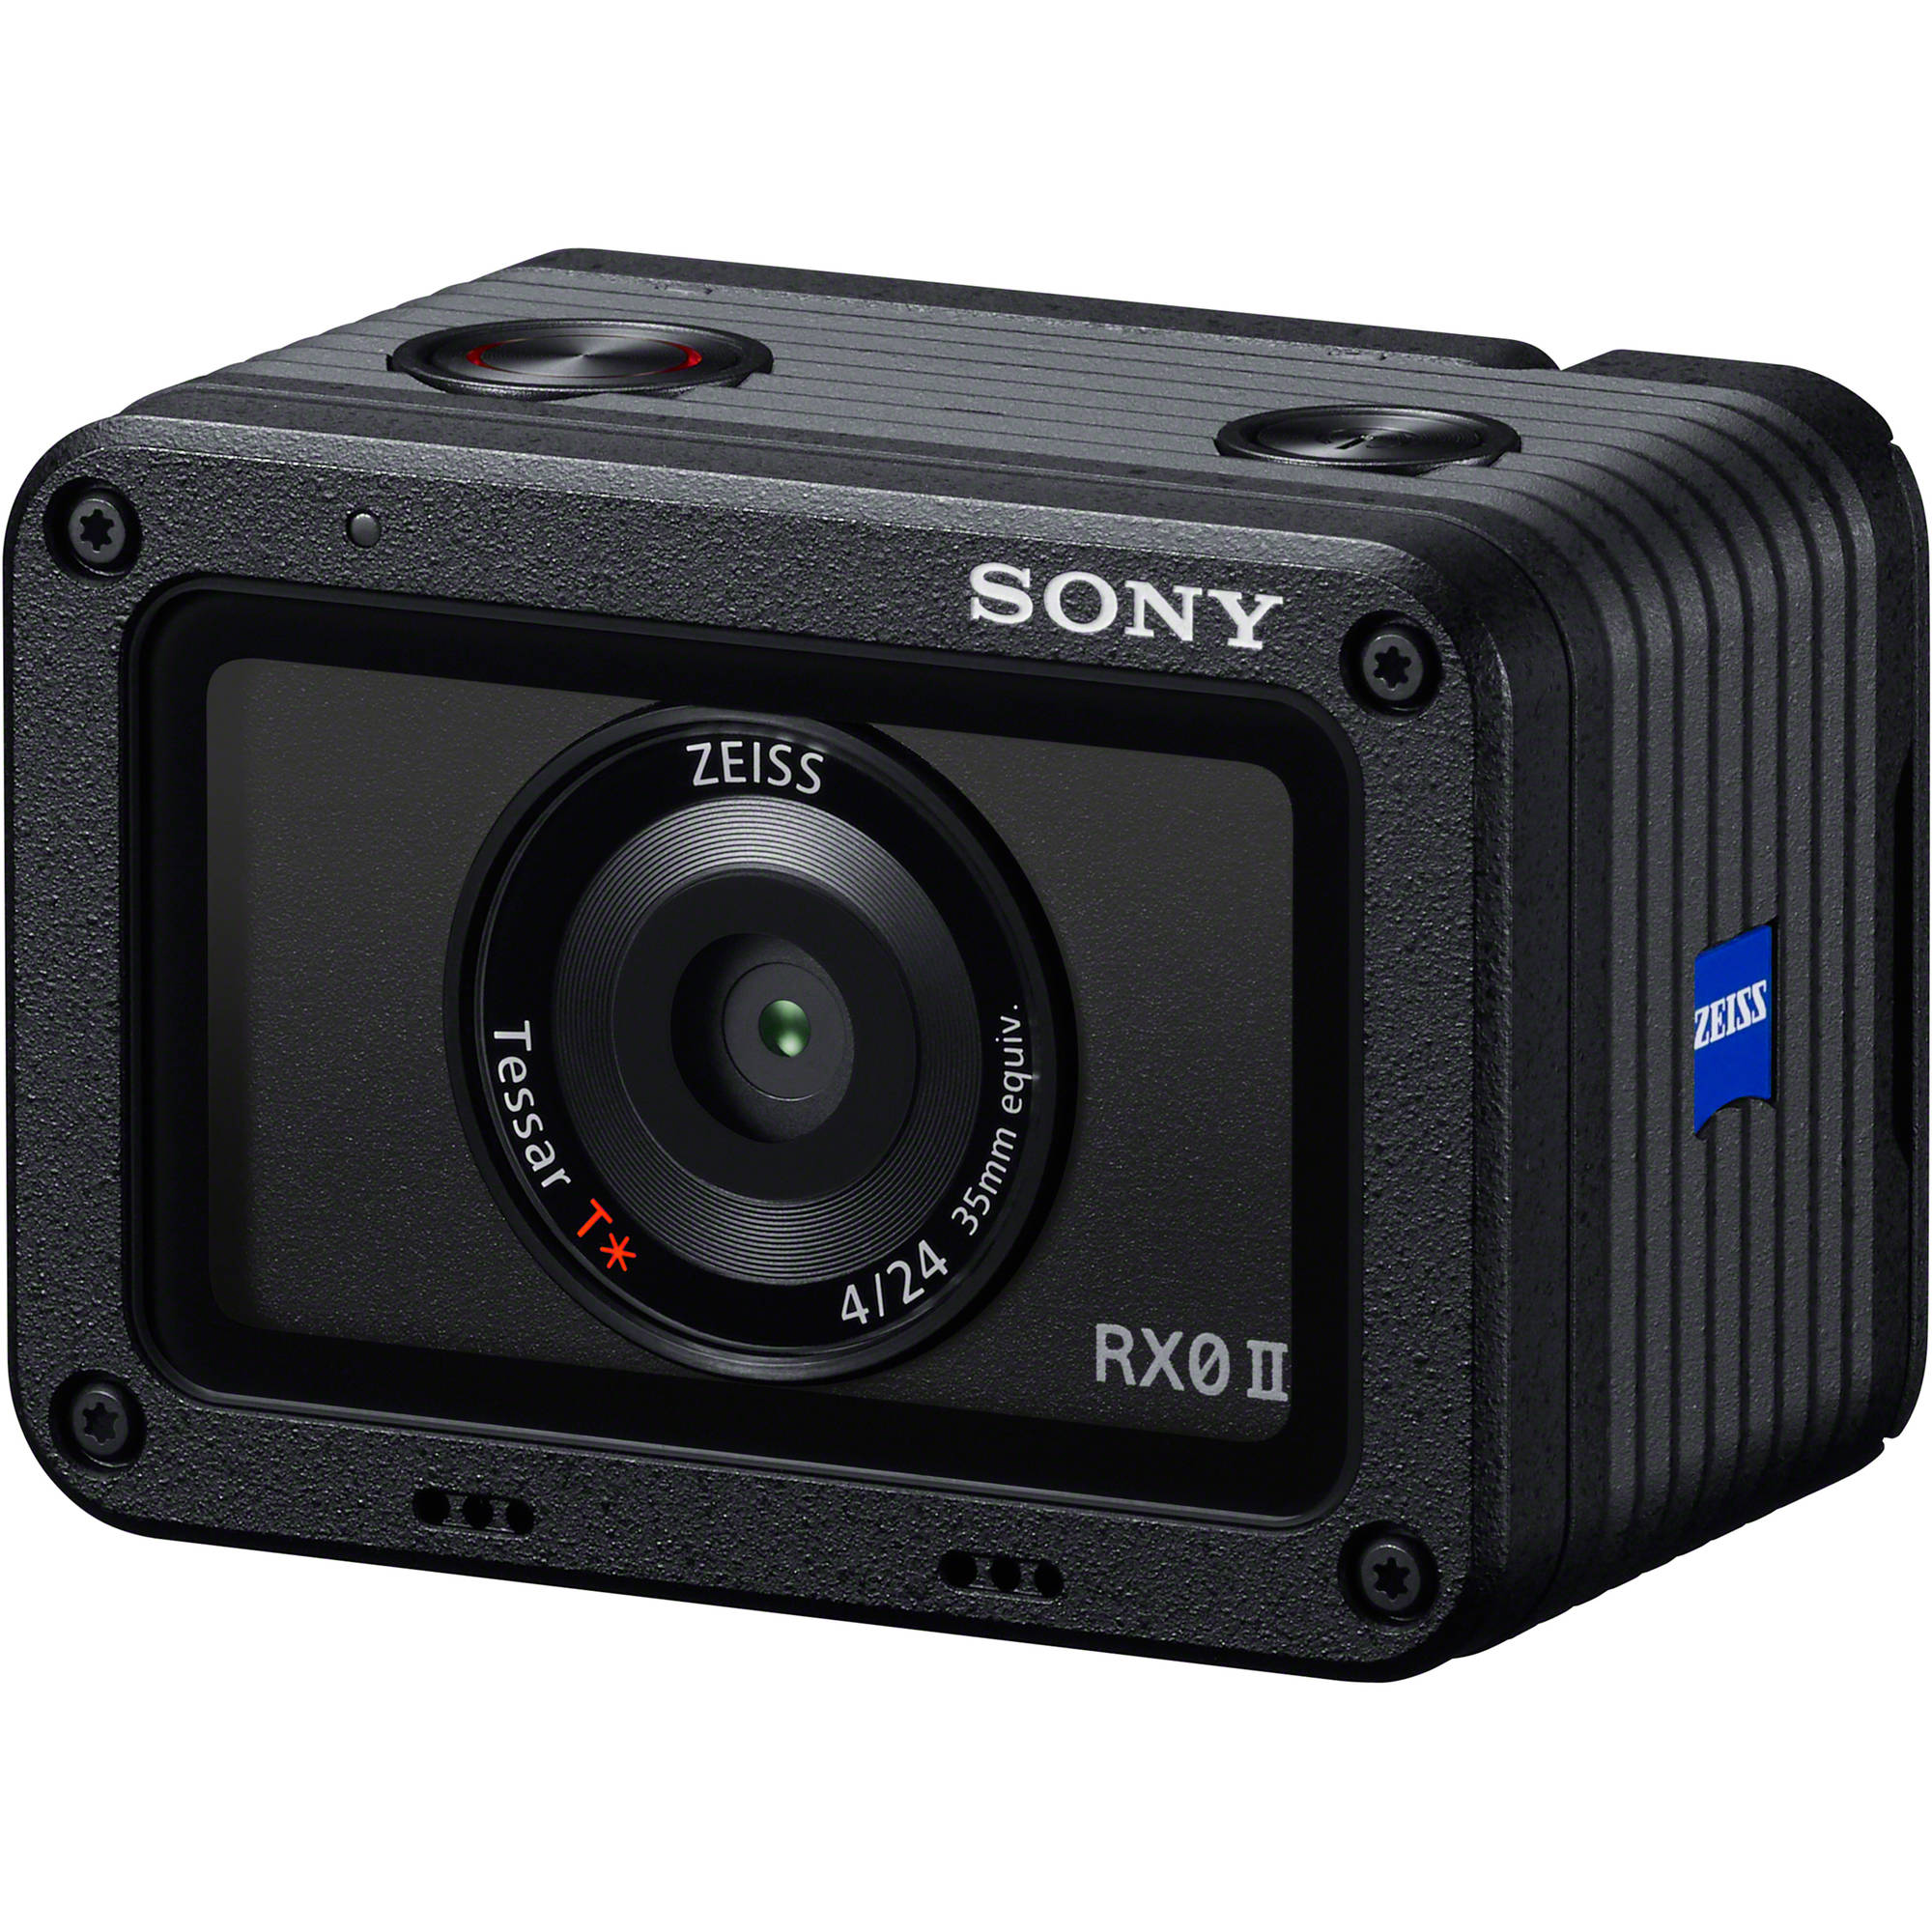 Cámara digital Sony Cyber-shot DSC-RX0 II